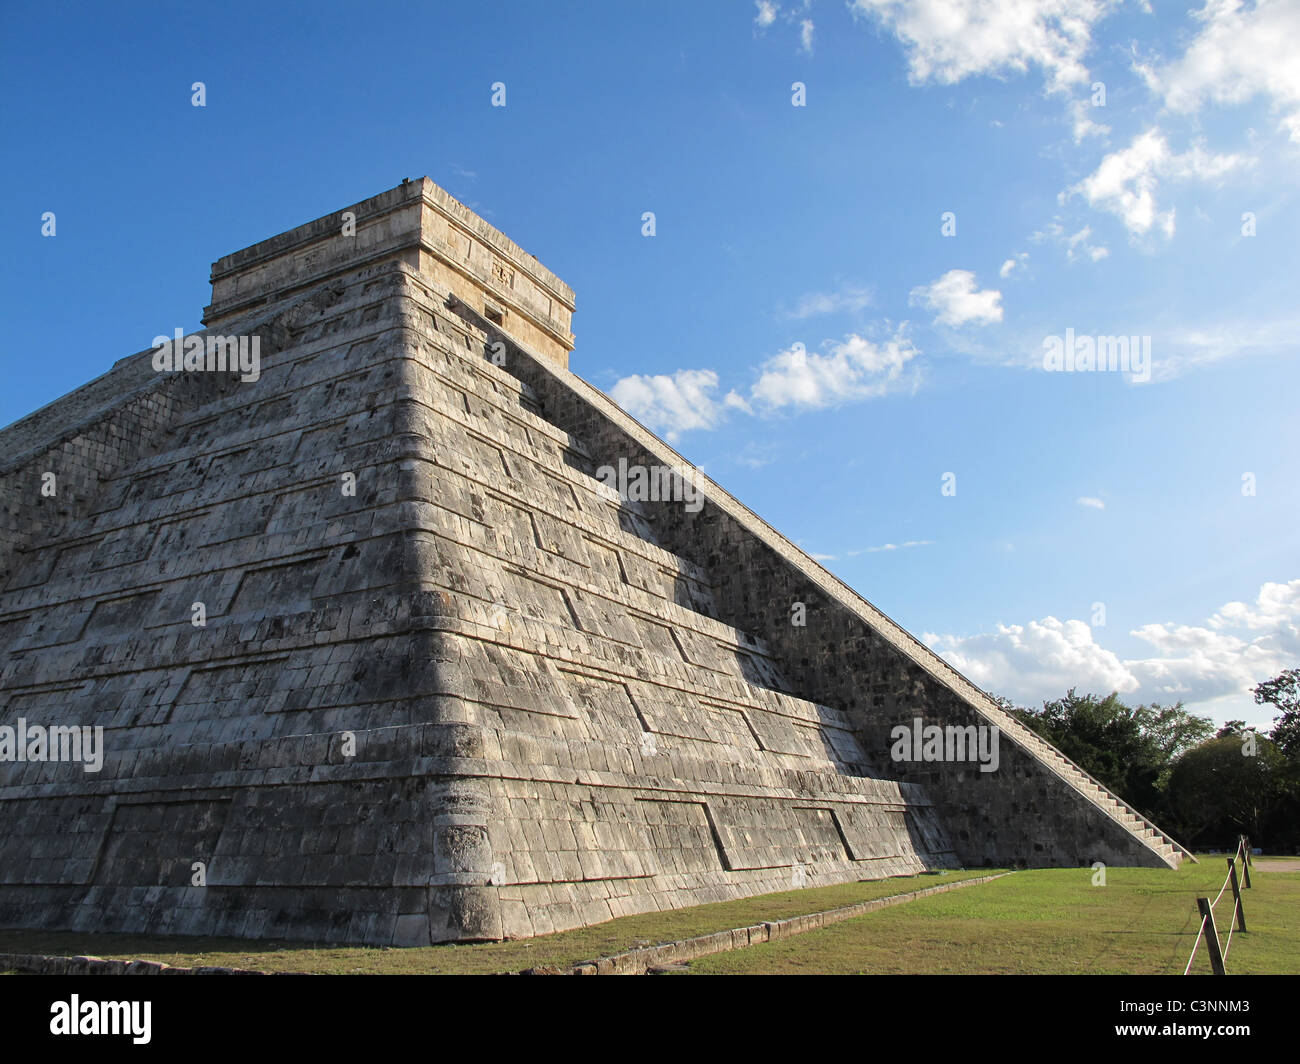 Die größte Pyramide in Chichen Itza in Mexiko, ein UNESCO-Weltkulturerbe. Einer alten Mayakultur von Mexiko. Stockfoto